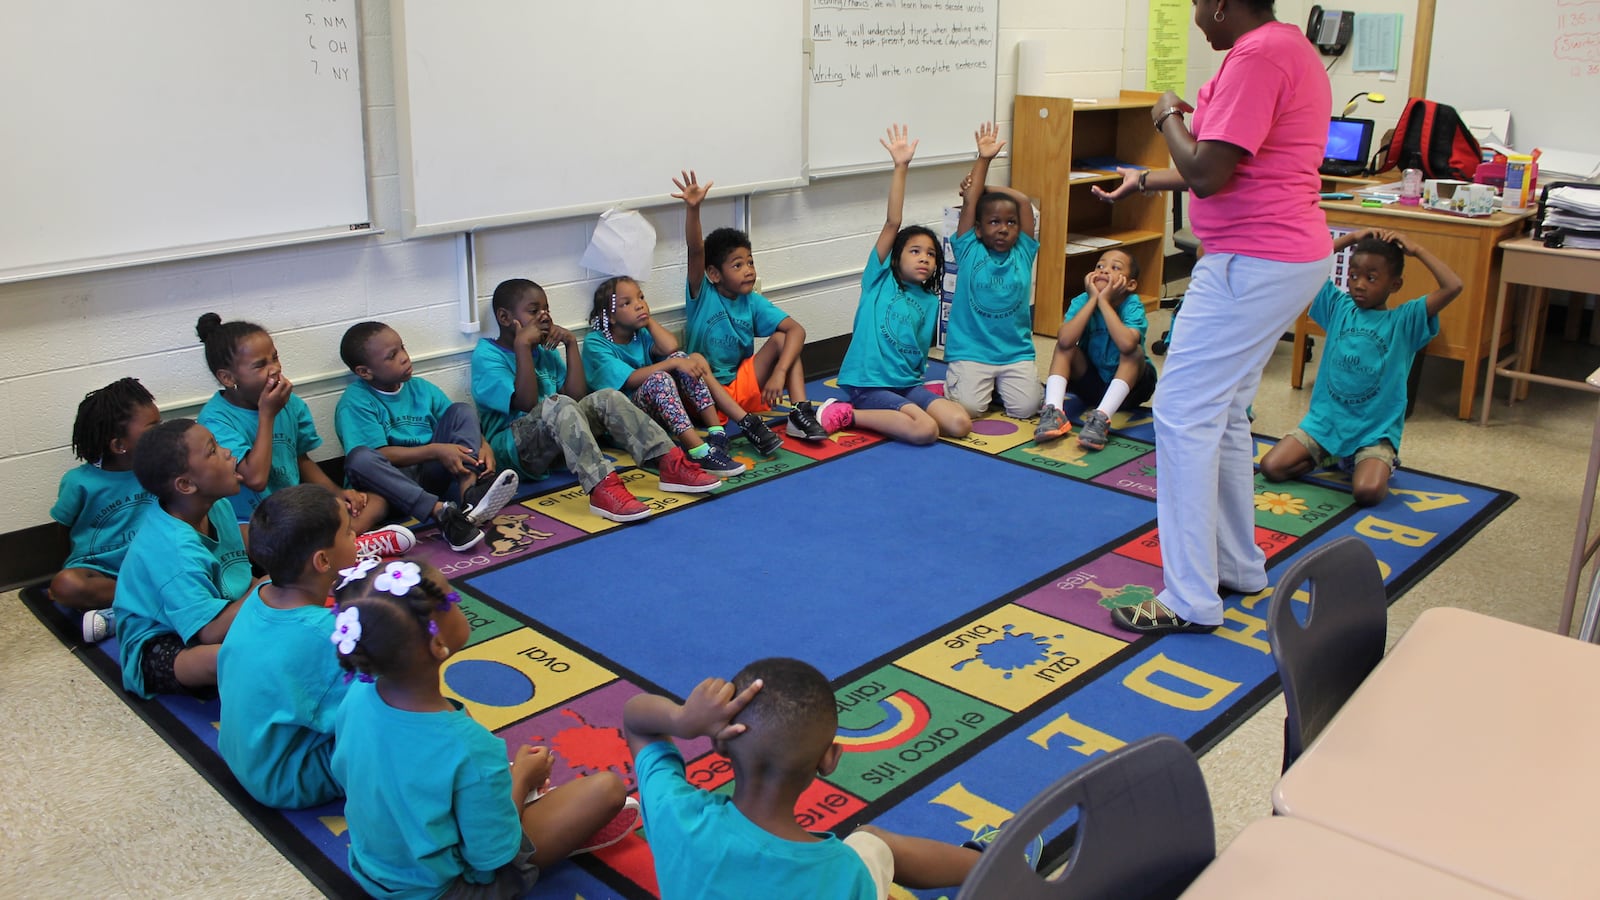 Kindergarten students participate in activities at the 100 Black Men Summer Academy at IPS School 74.